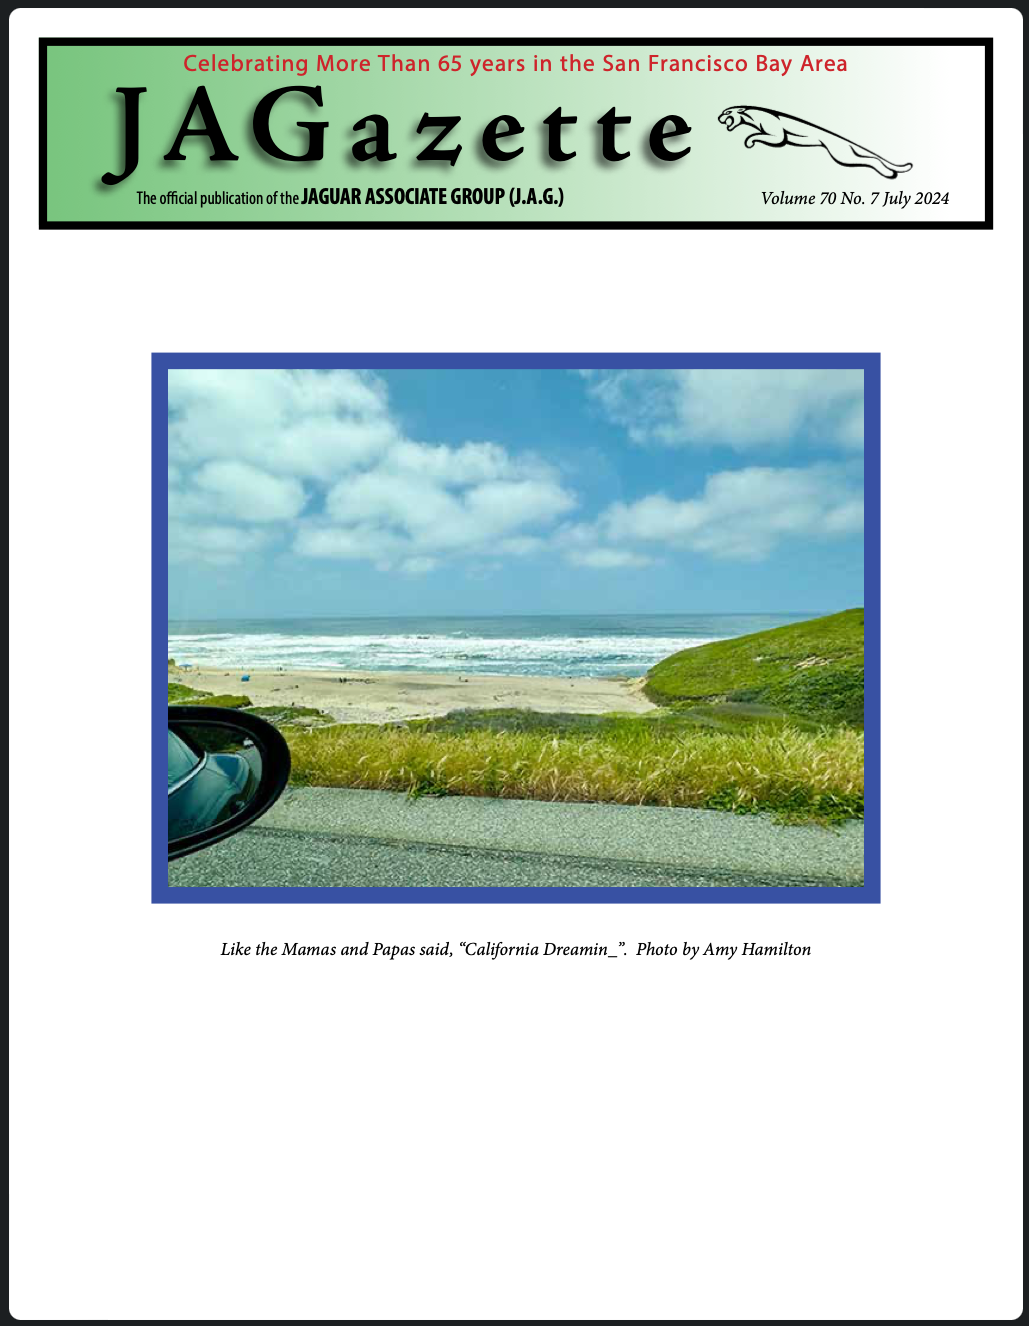 JAGazette cover, July 2024